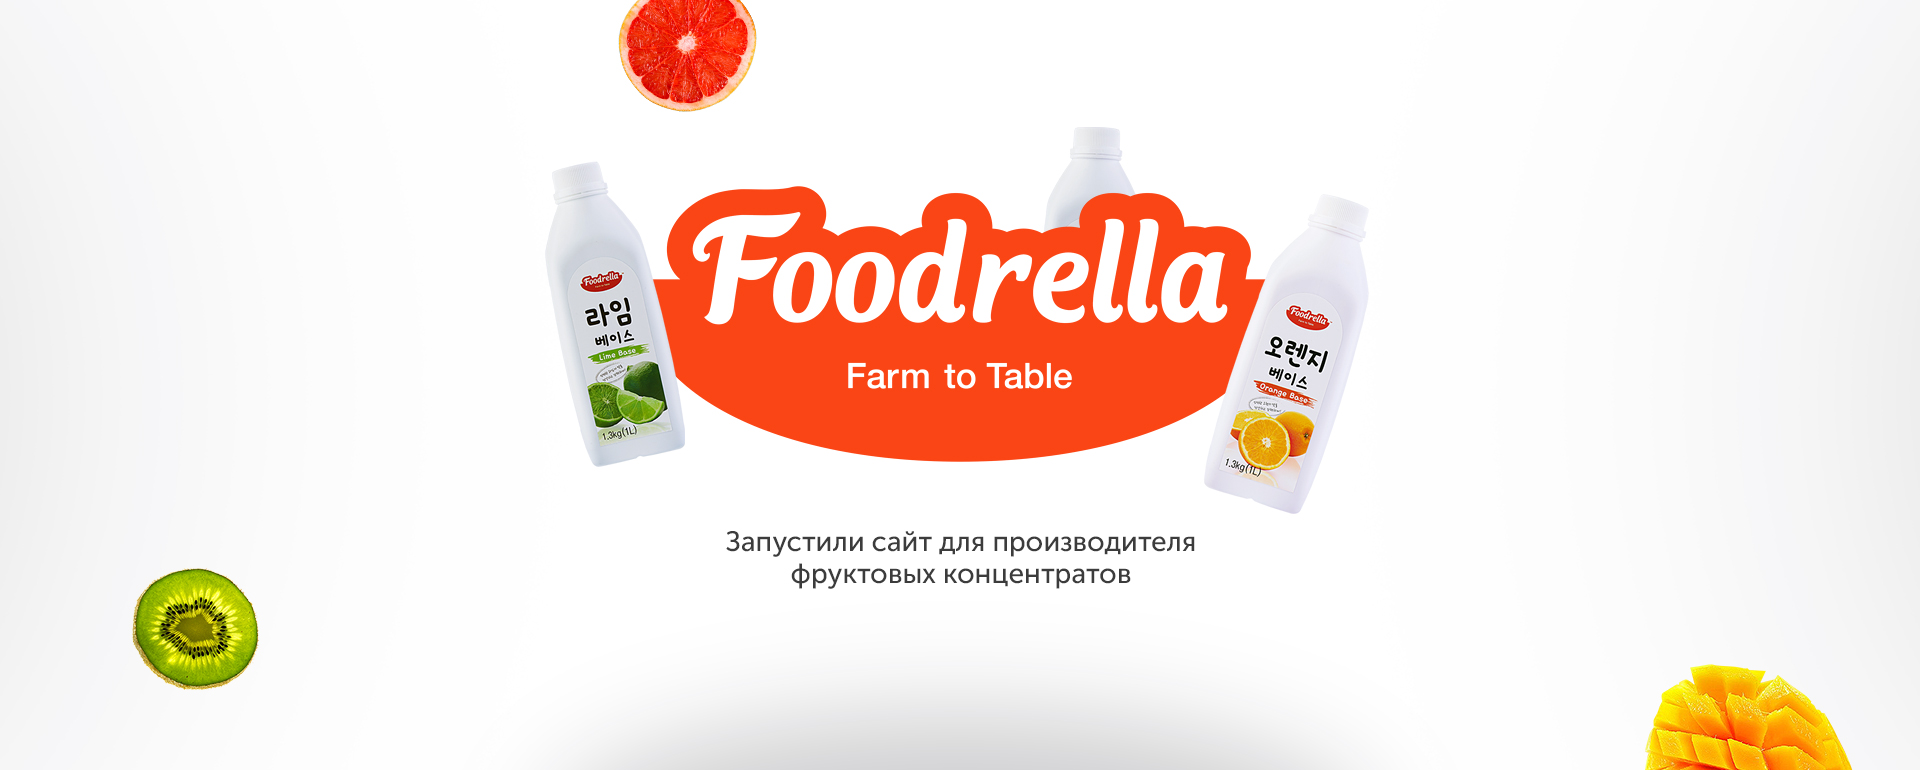 Новый сайт Foodrella уже в деле!